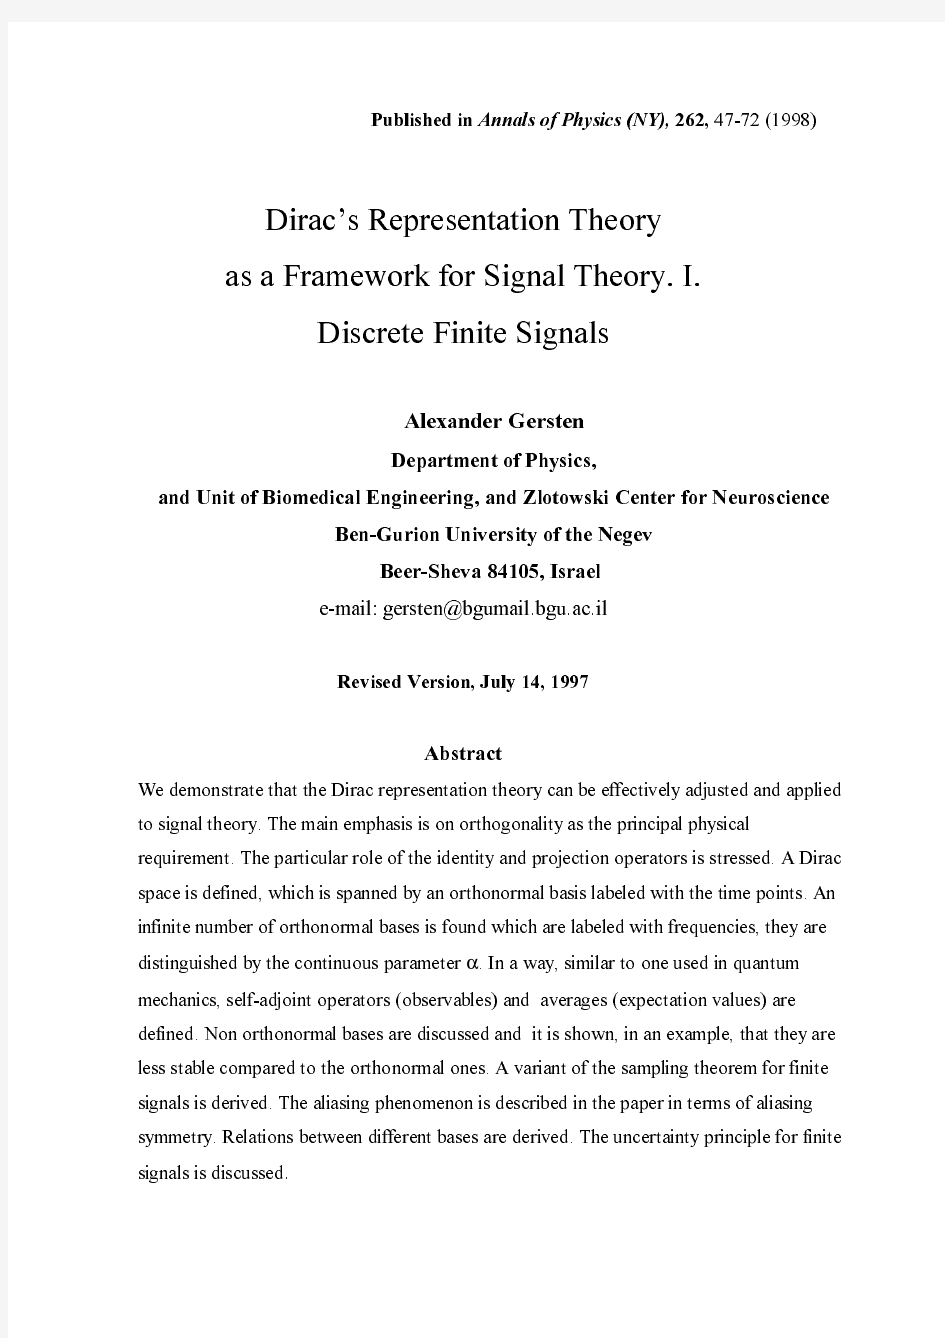 Dirac's Representation Theory as a Framework for Signal Theory. I. Discrete Finite Signals